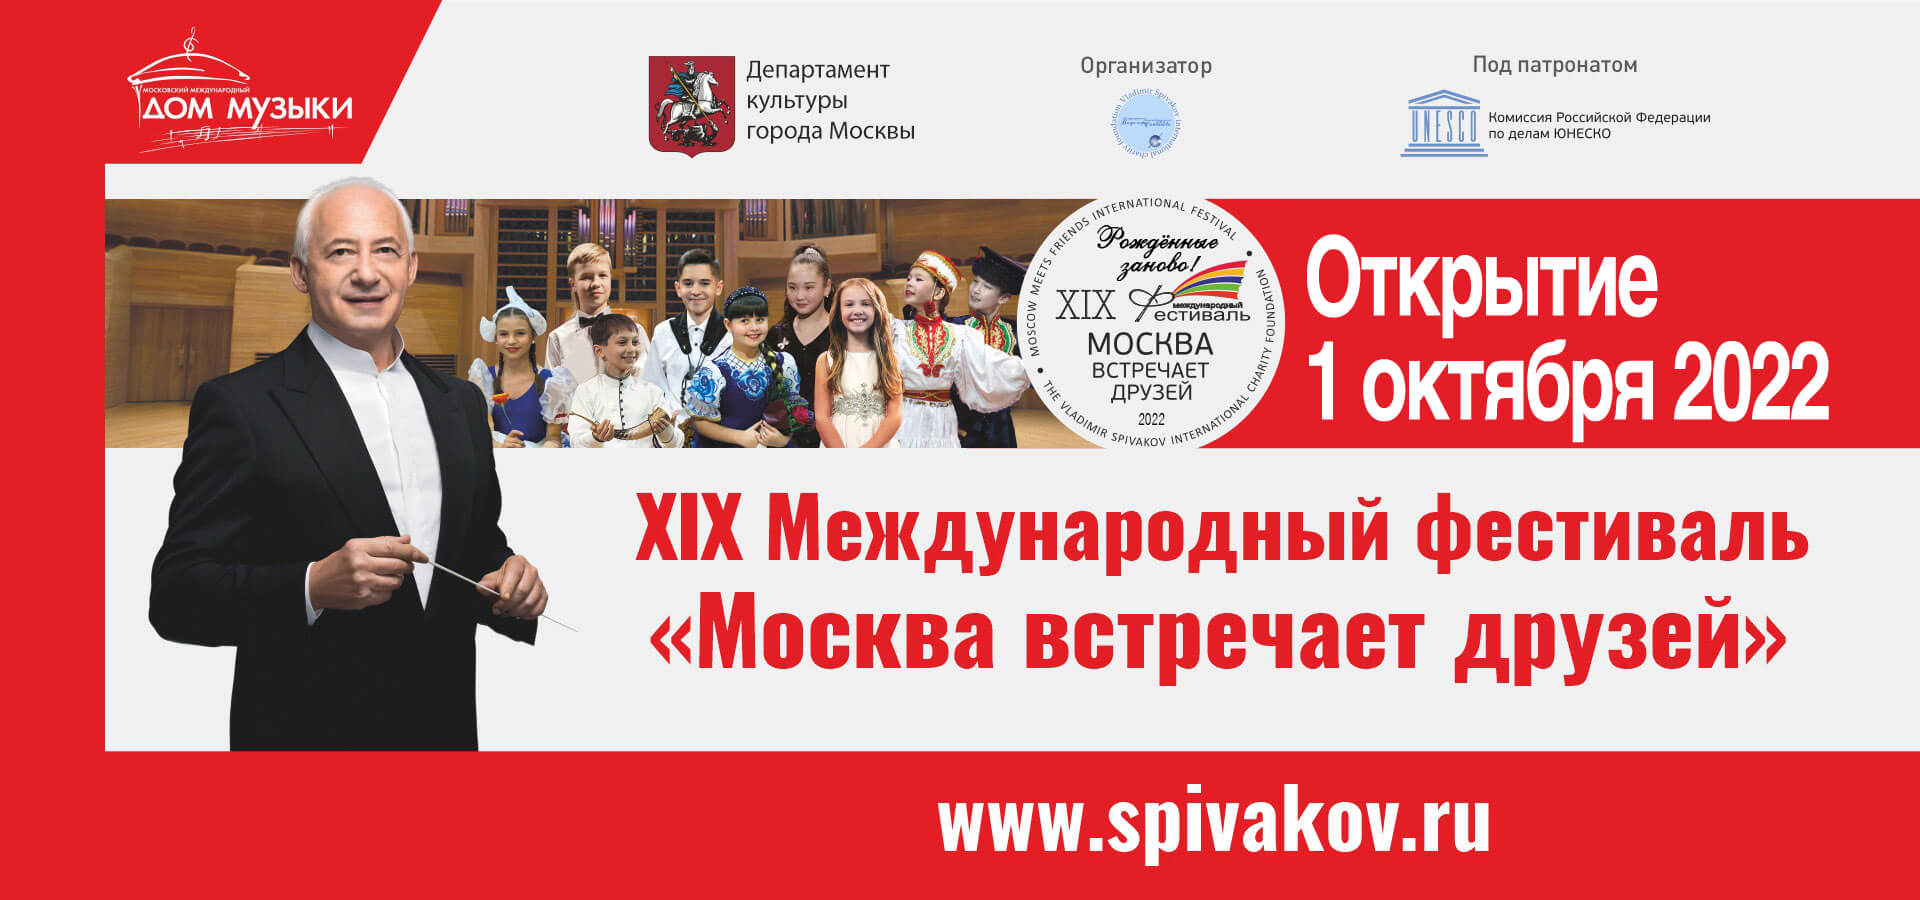 Международный фестиваль «Москва встречает друзей»